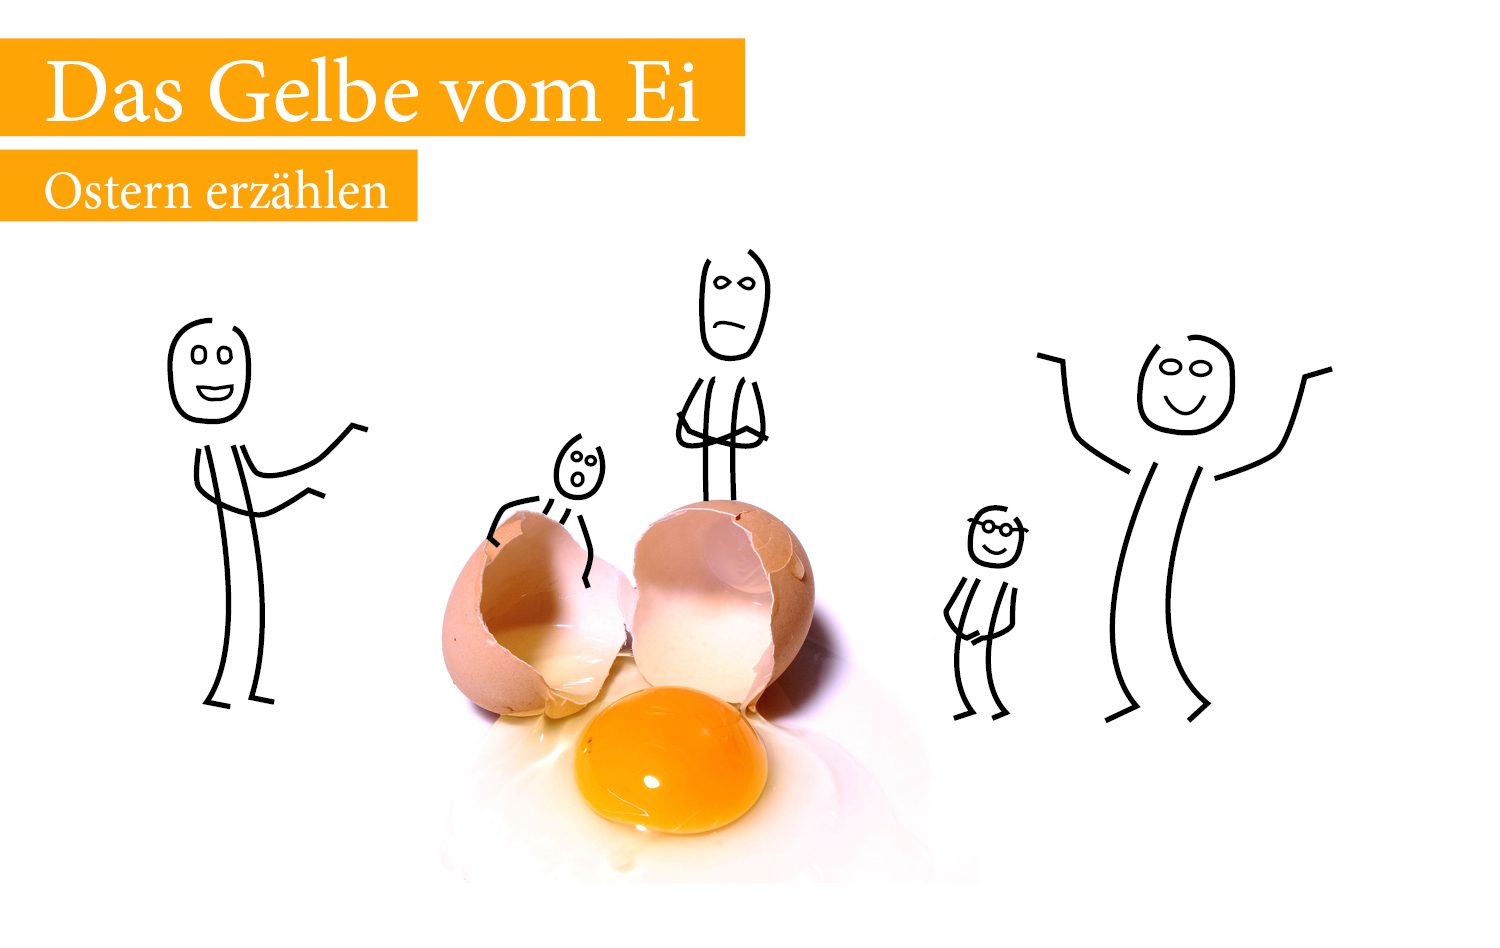 Das gelbe vom Ei (c) KJ Innsbruck